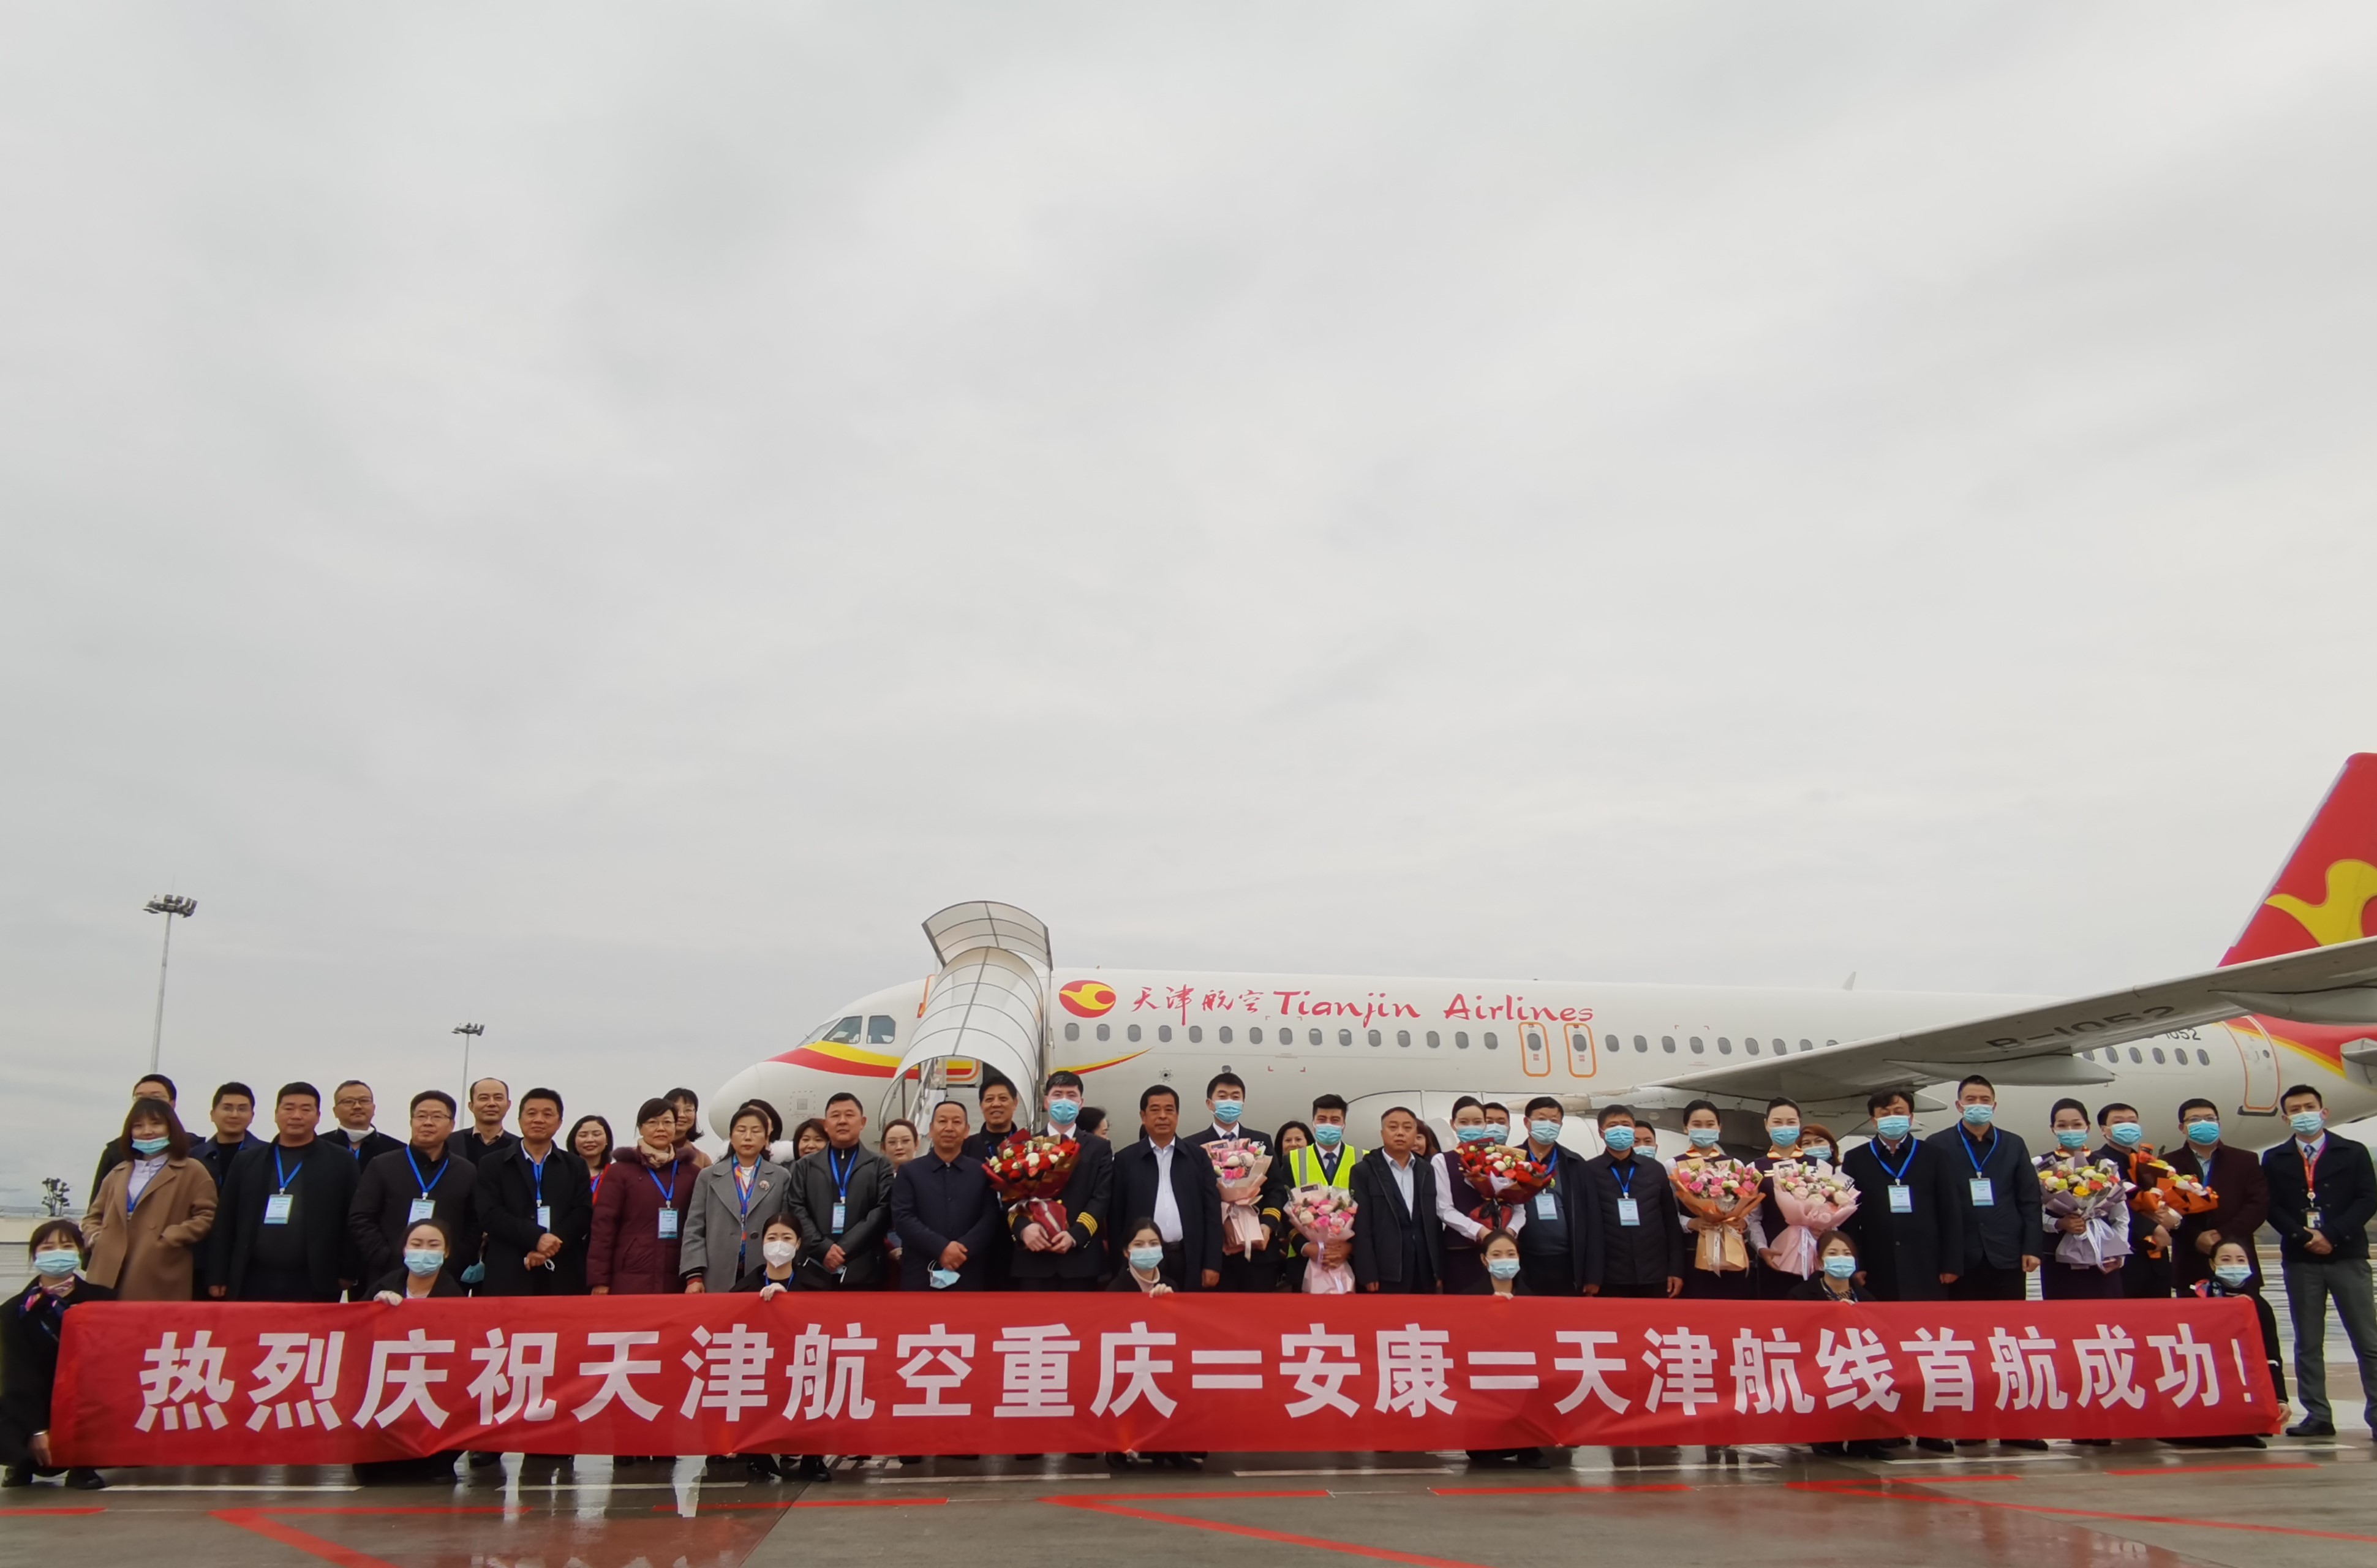 安康机场再添新航线  "重庆-安康-天津”航线成功首航